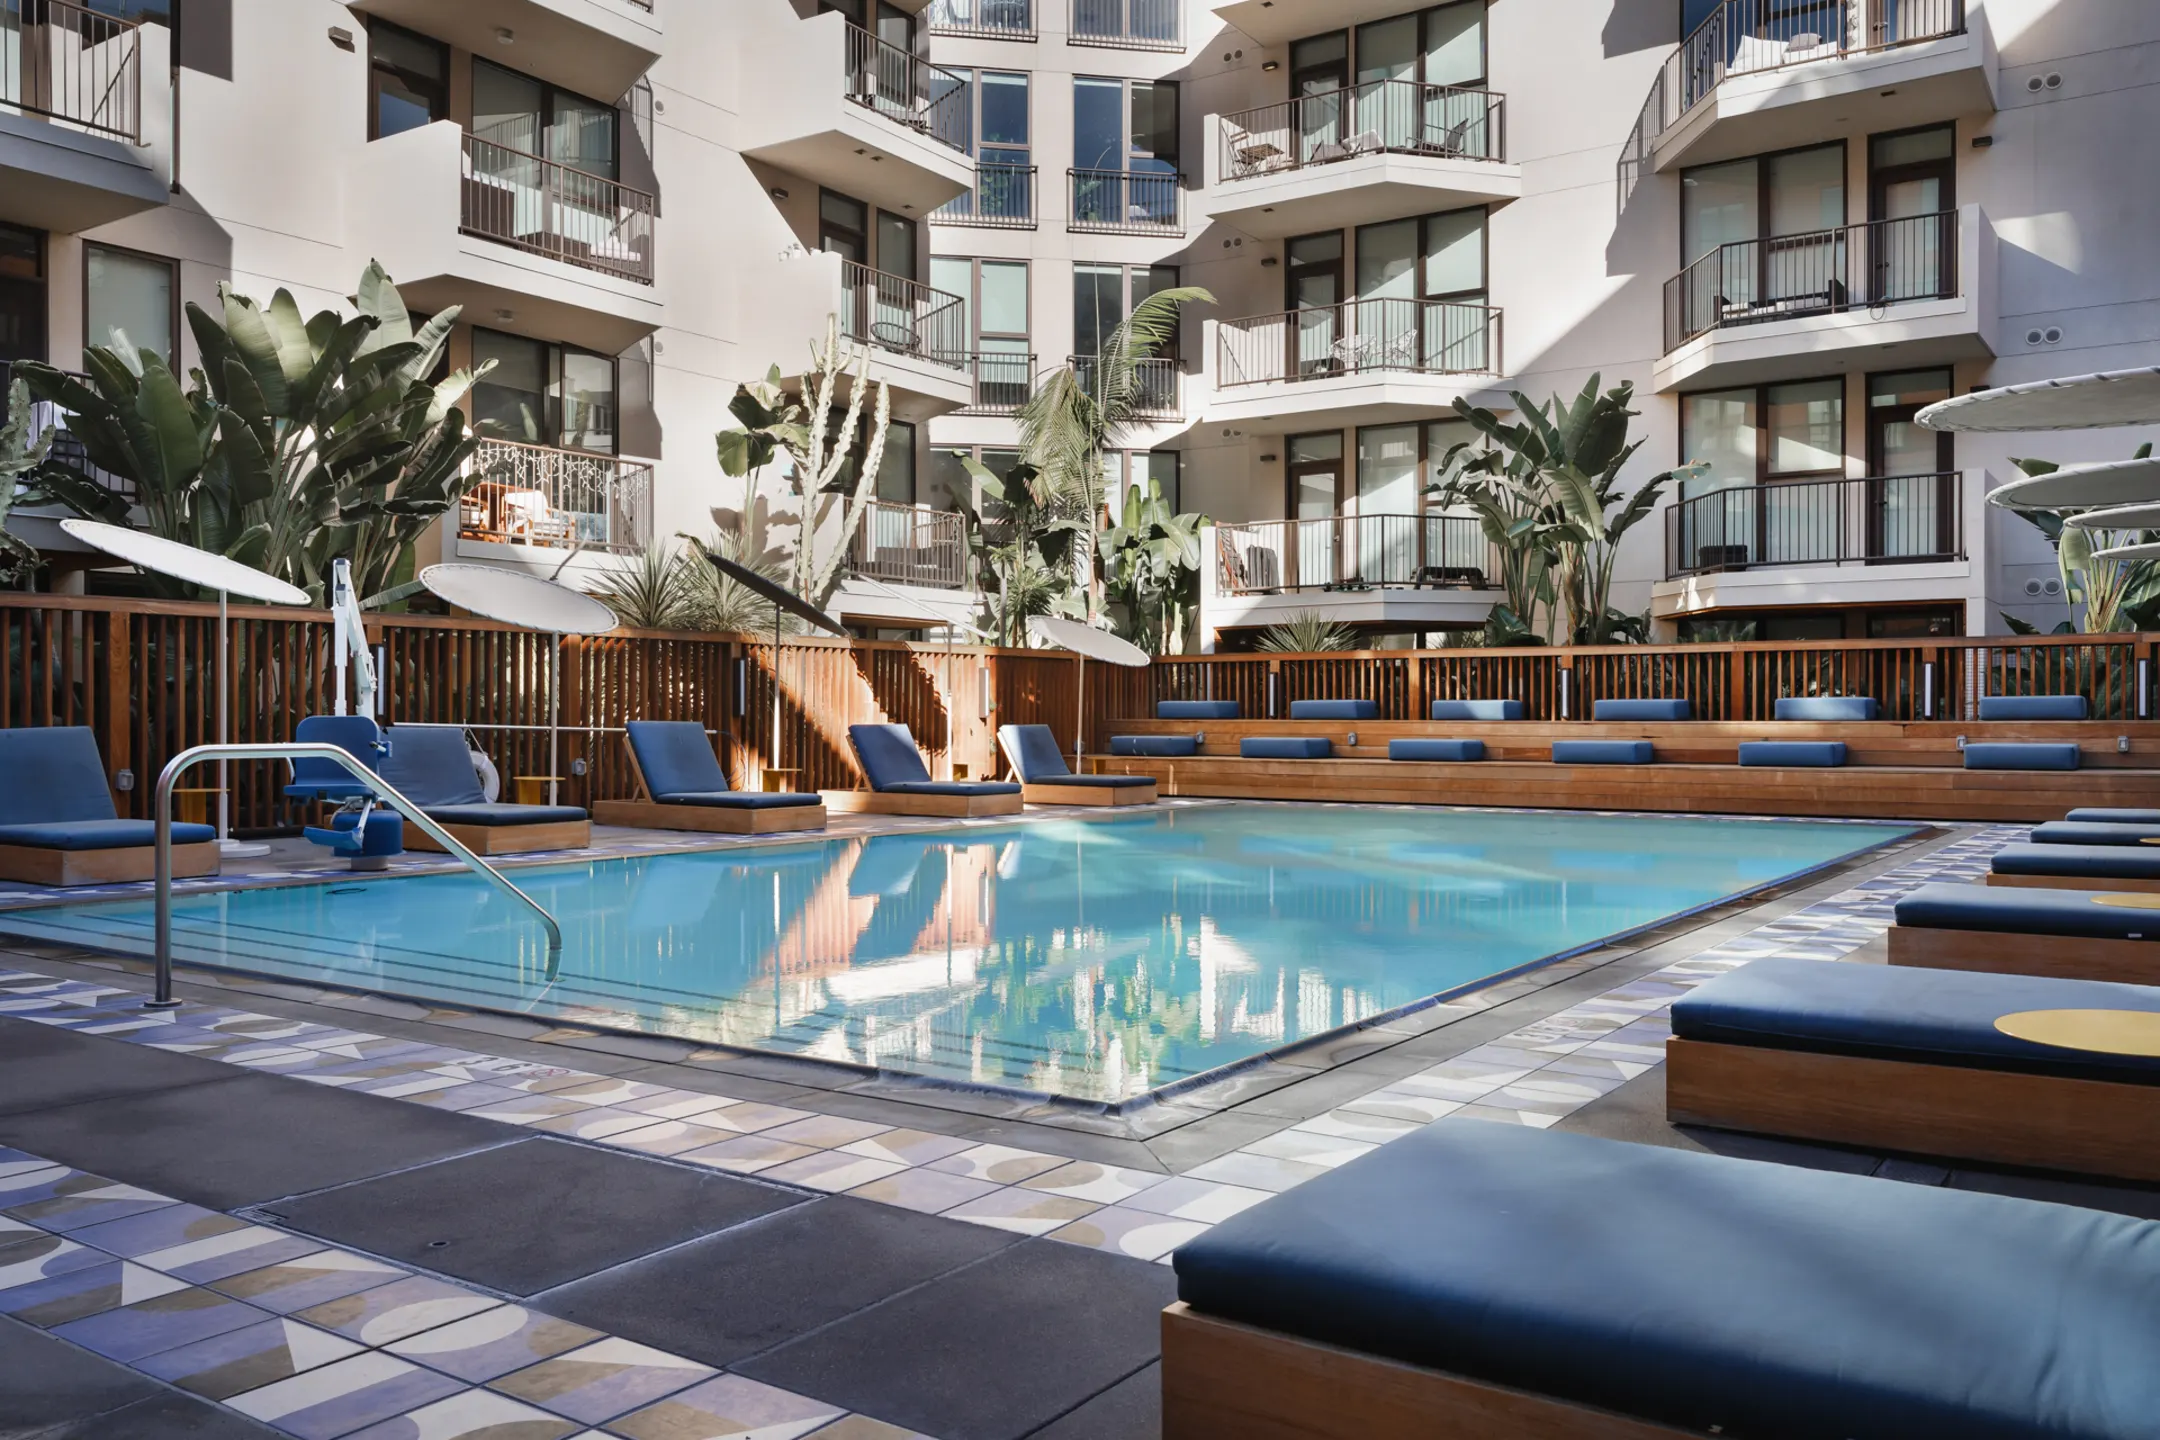 Pool - El Centro Apartments & Bungalows - Los Angeles, CA